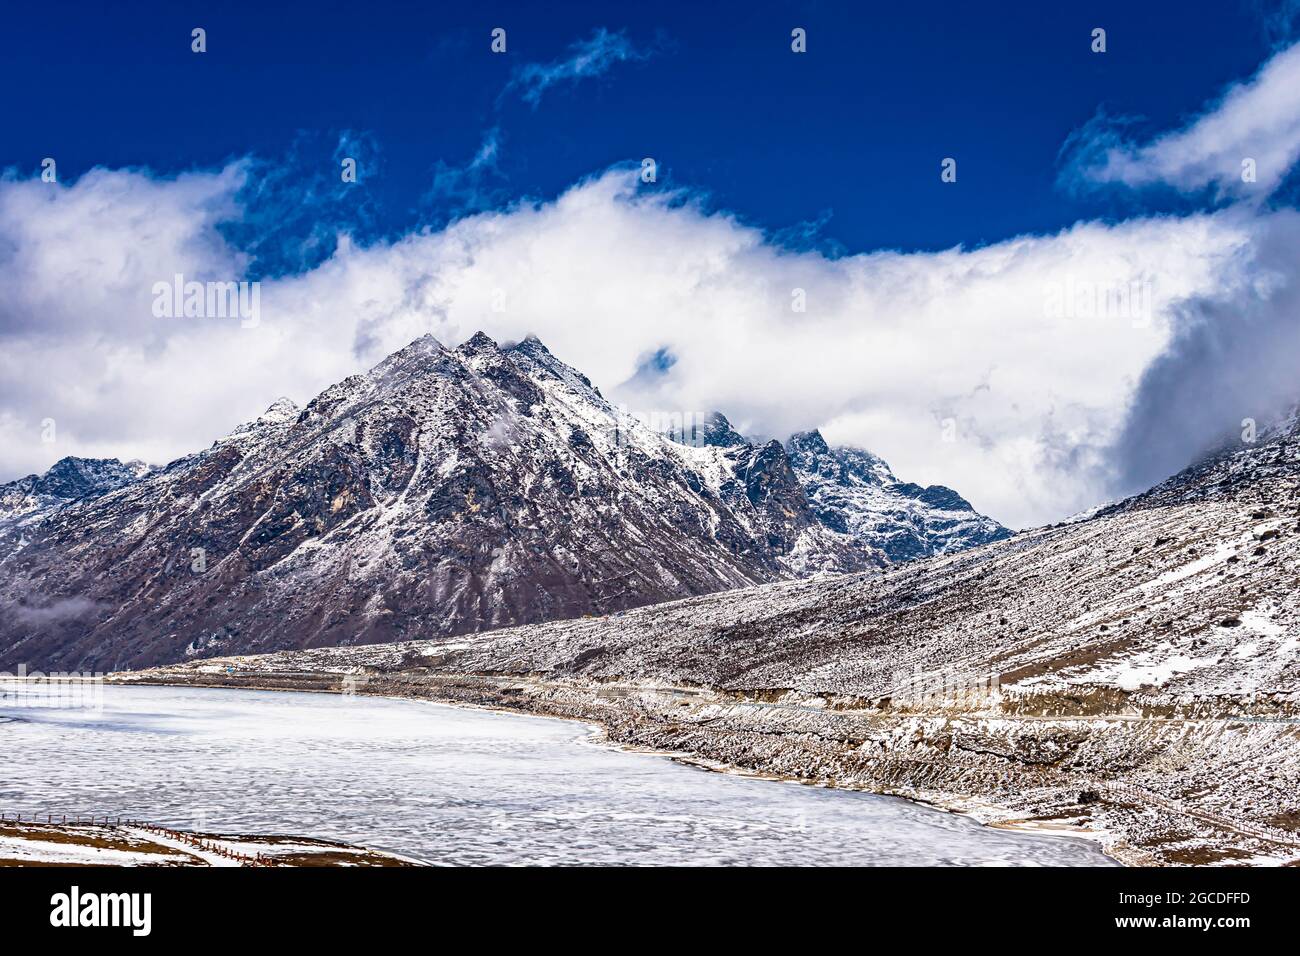 montañas nevadas con lago congelado y cielo azul brillante por la mañana desde ángulo plano se toma una imagen en sela tawang arunachal pradesh india. Foto de stock